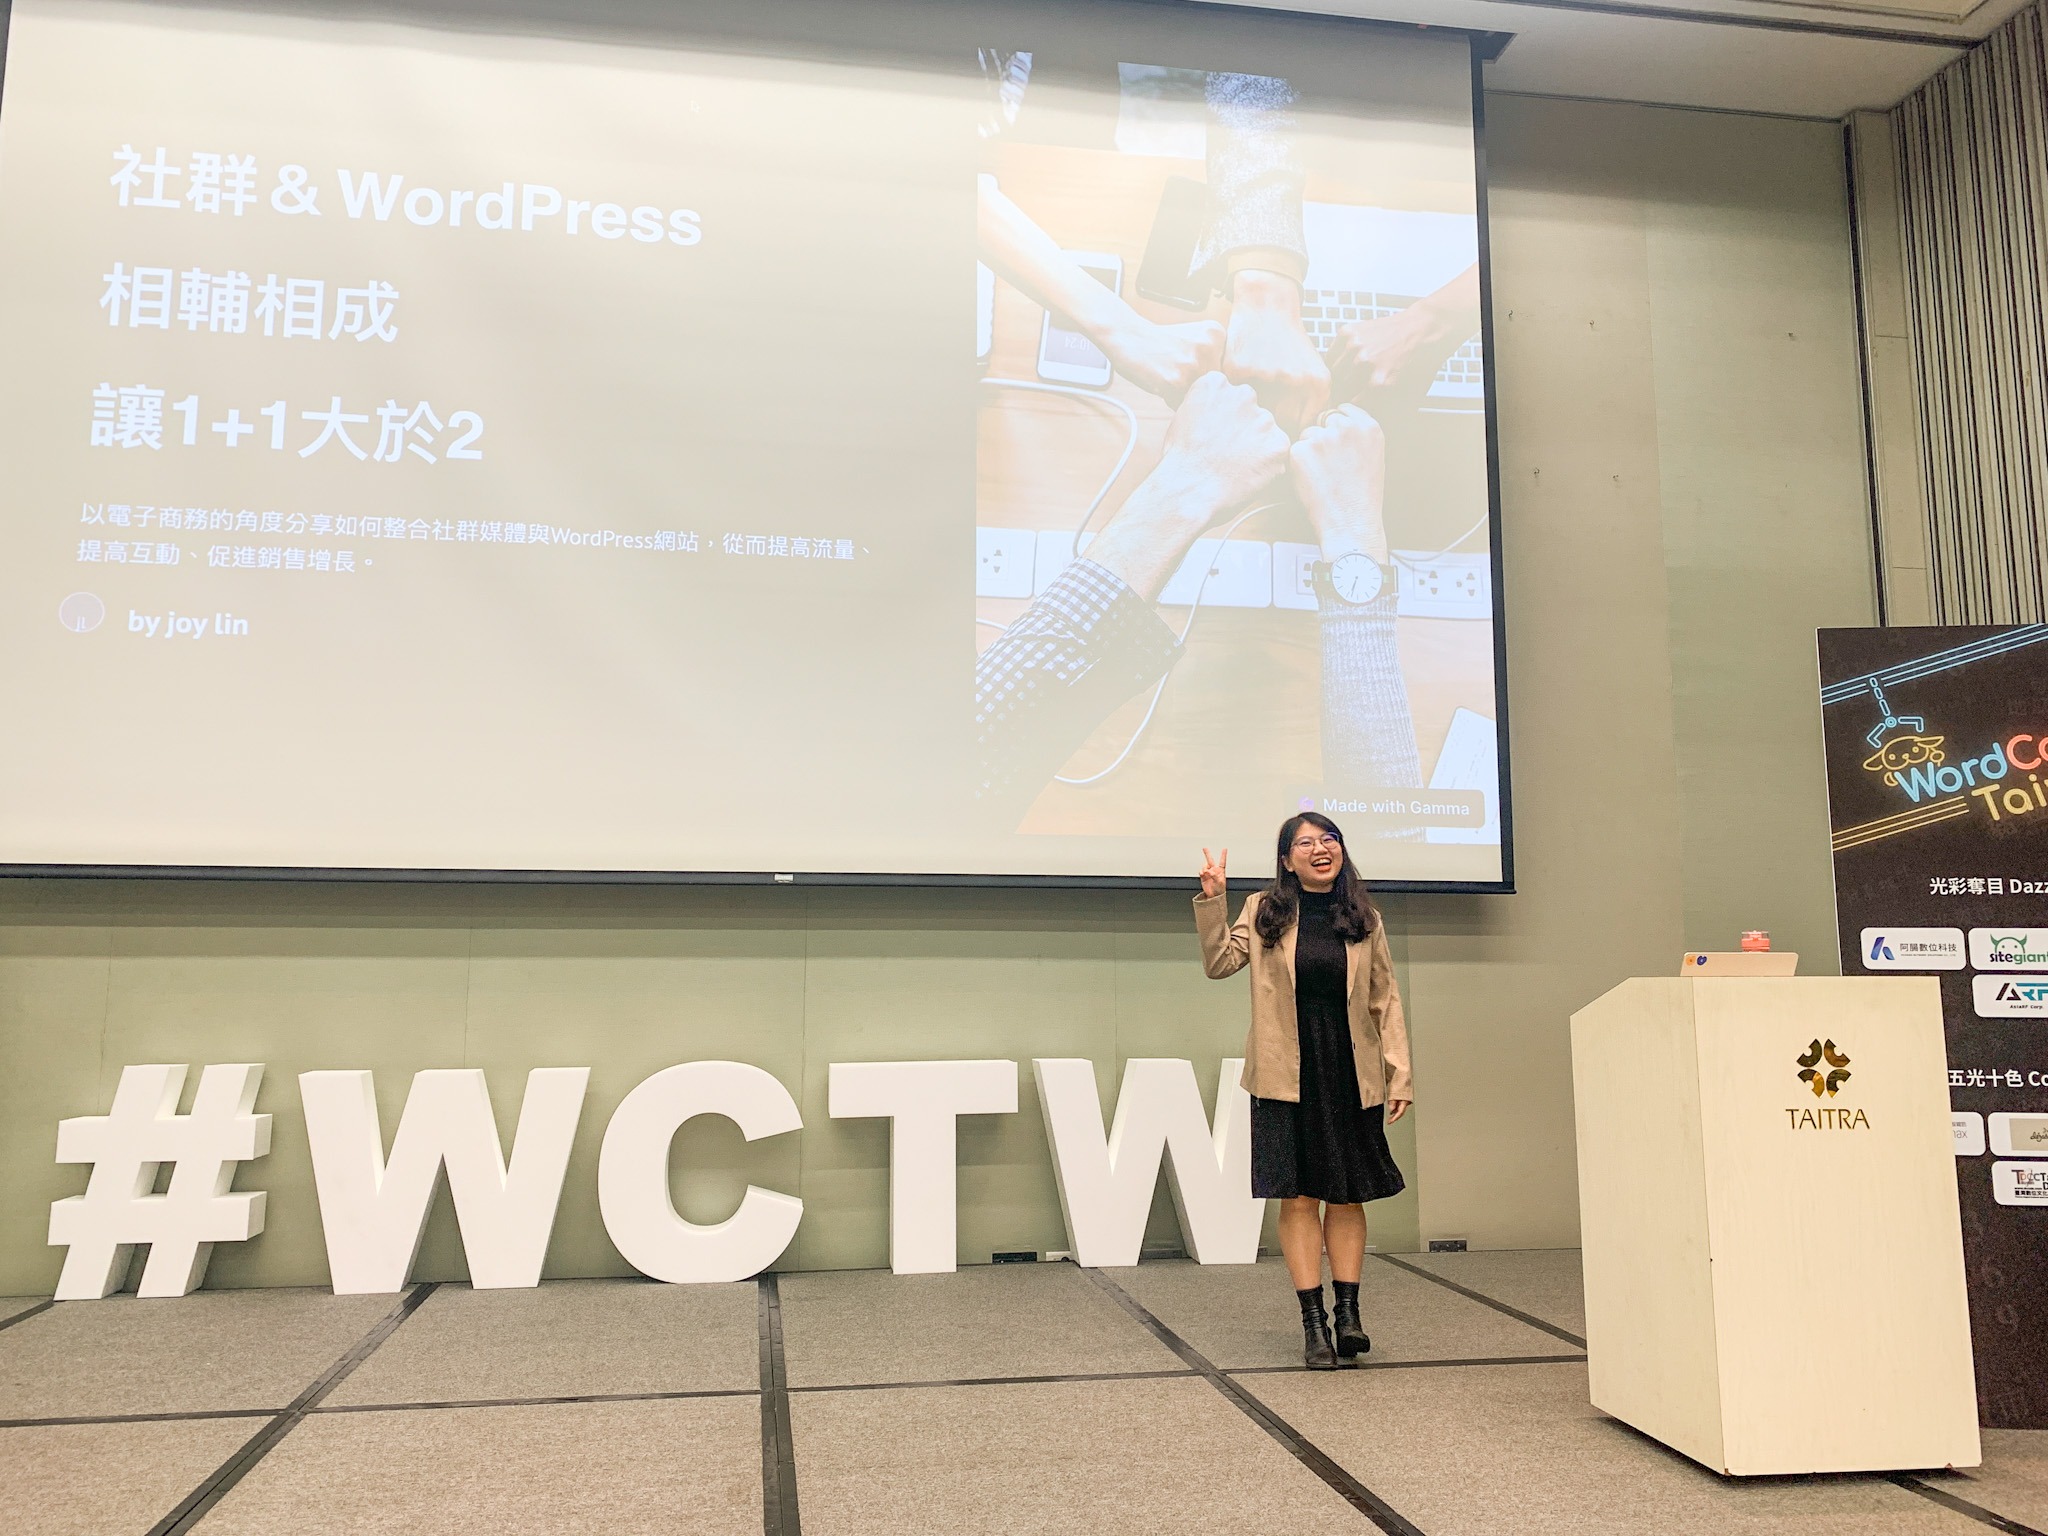 WordCamp Taiwan